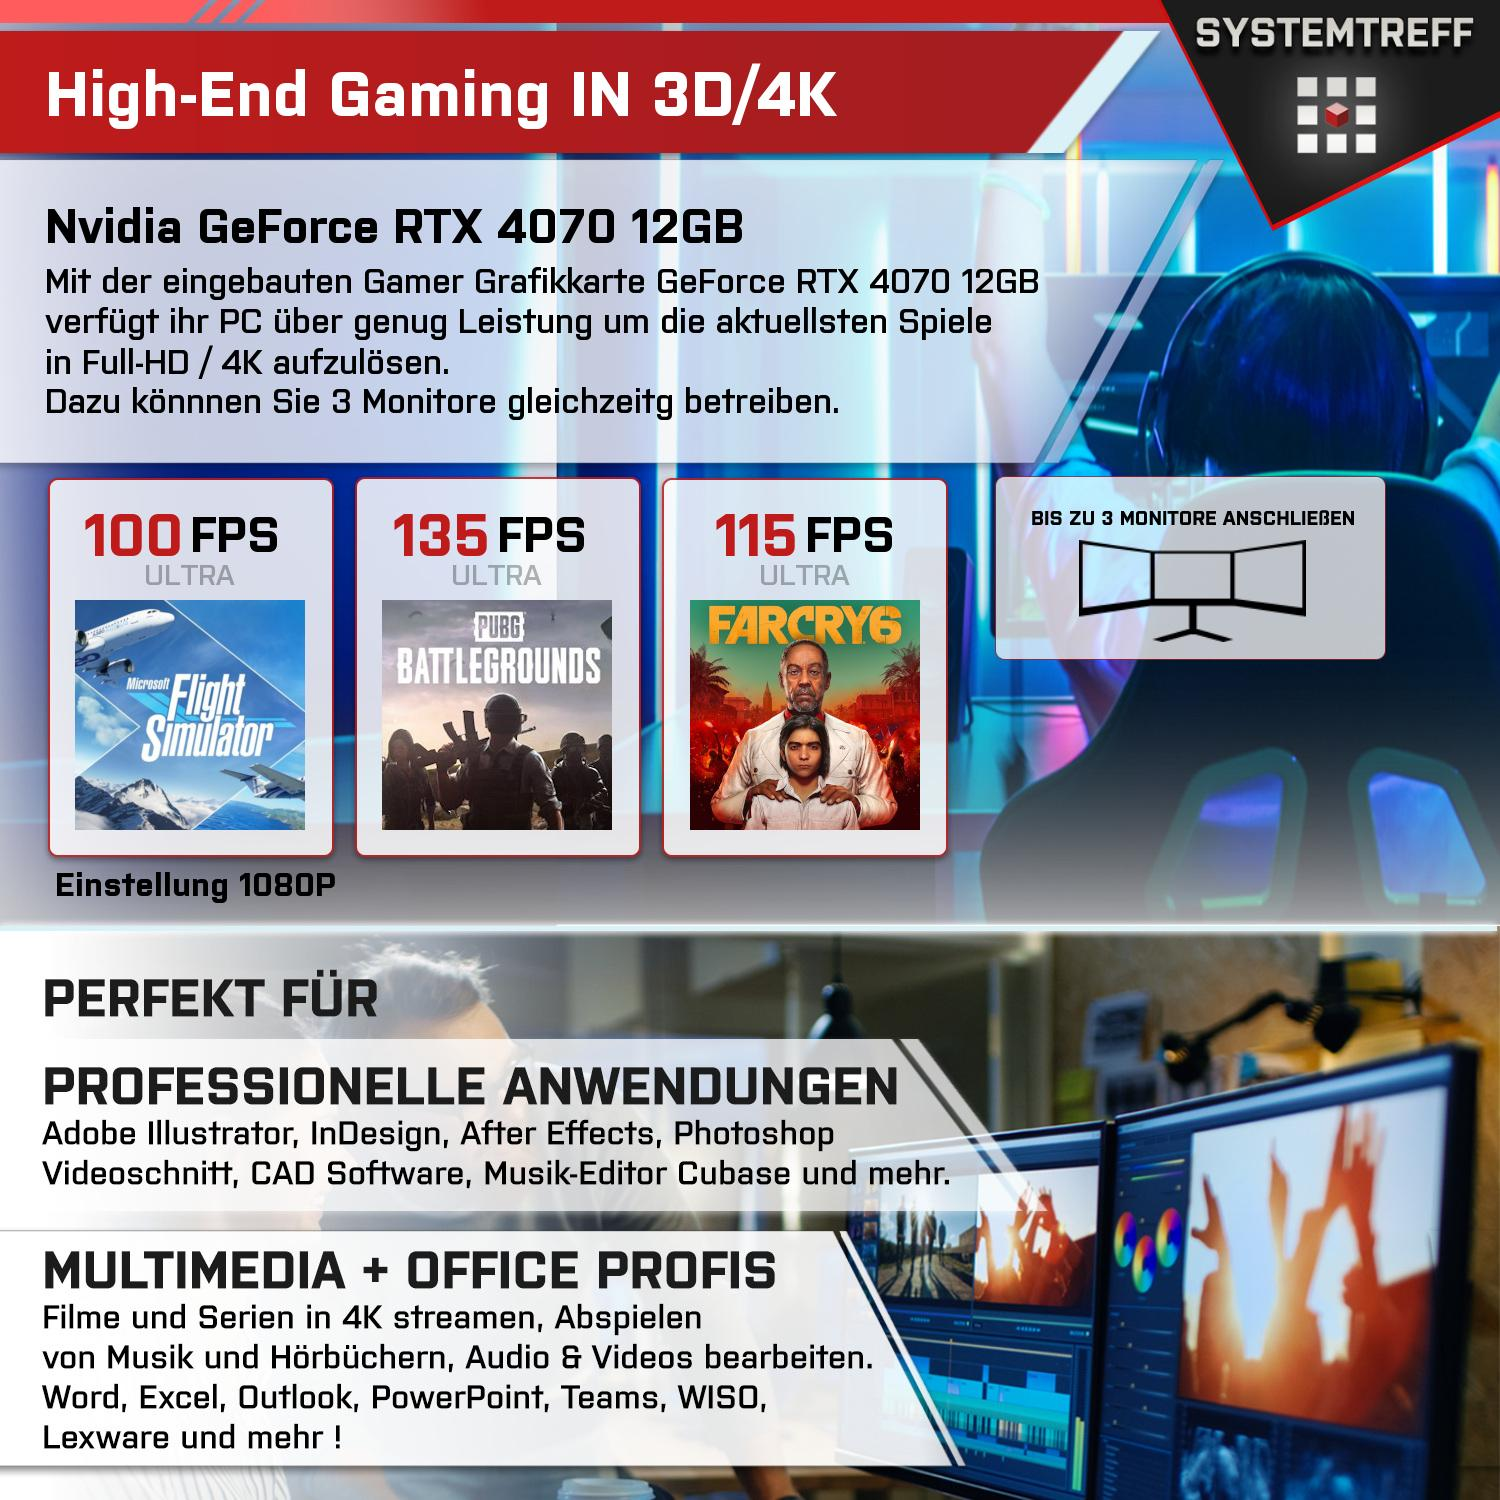 SYSTEMTREFF Gaming Komplett 1000 GeForce 5800X3D, Ryzen GB mSSD, 12GB 4070 Komplett RTX Nvidia AMD 7 GB 32 GDDR6, mit 5800X3D Prozessor, RAM, 12 GB PC